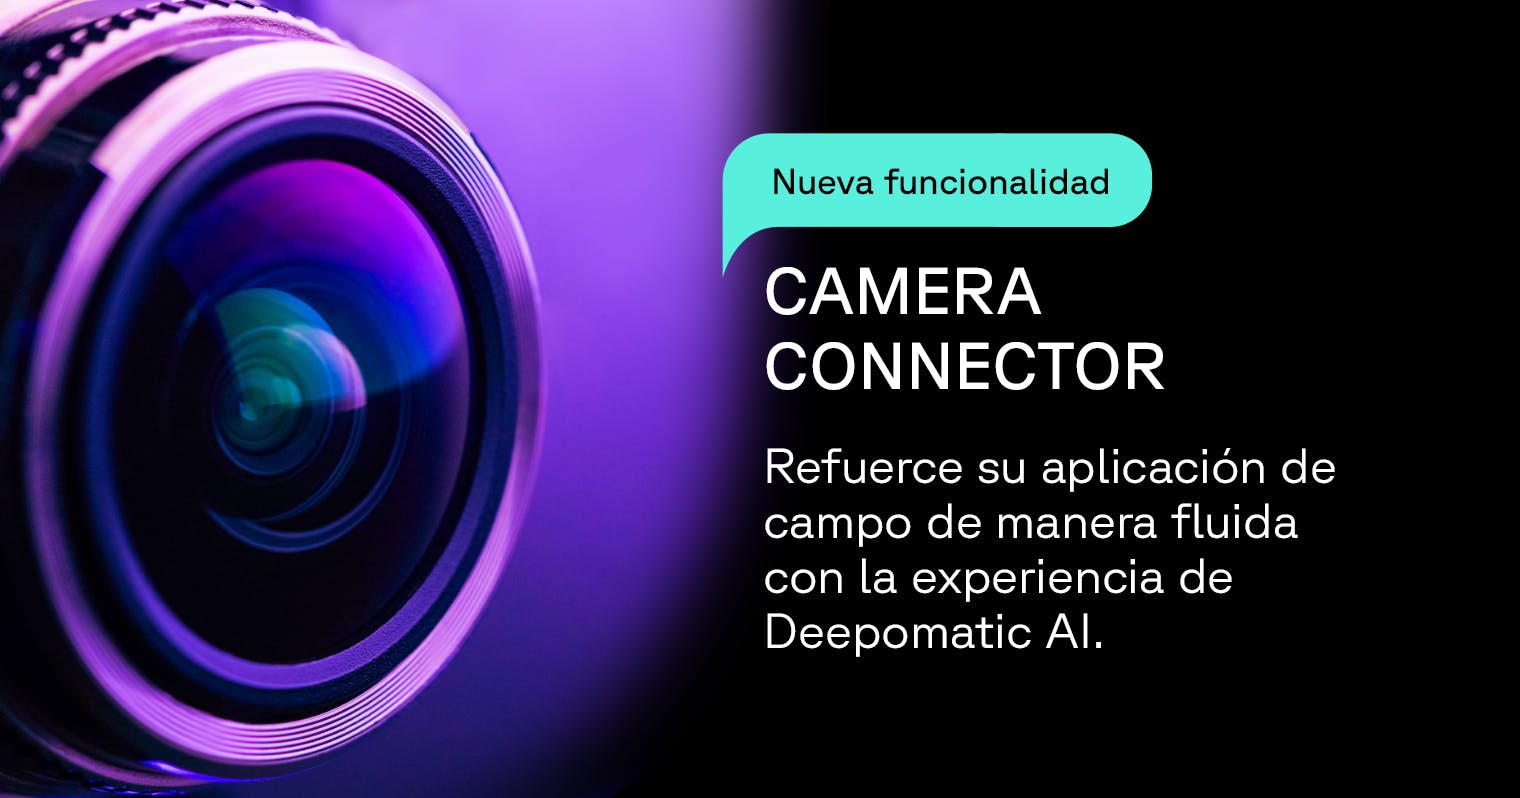 Deepomatic presenta Camera Connector para facilitar su implementación de control de calidad automatizado